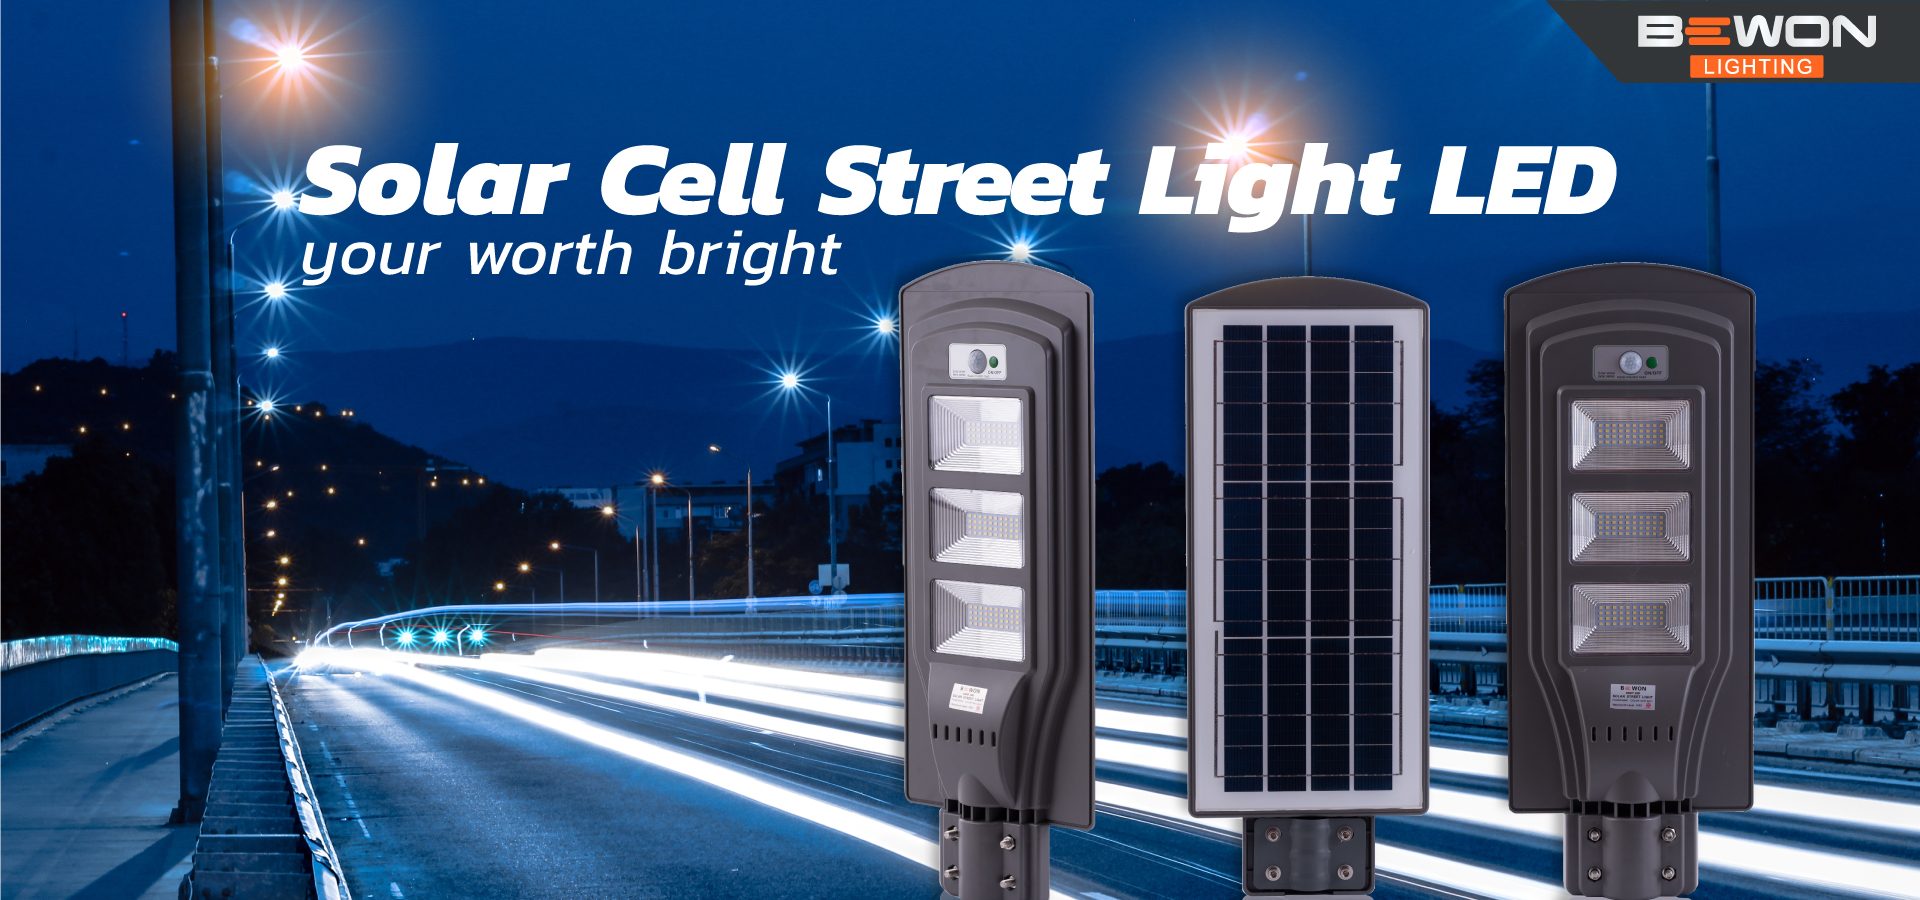 LED Street Light Solar Cell